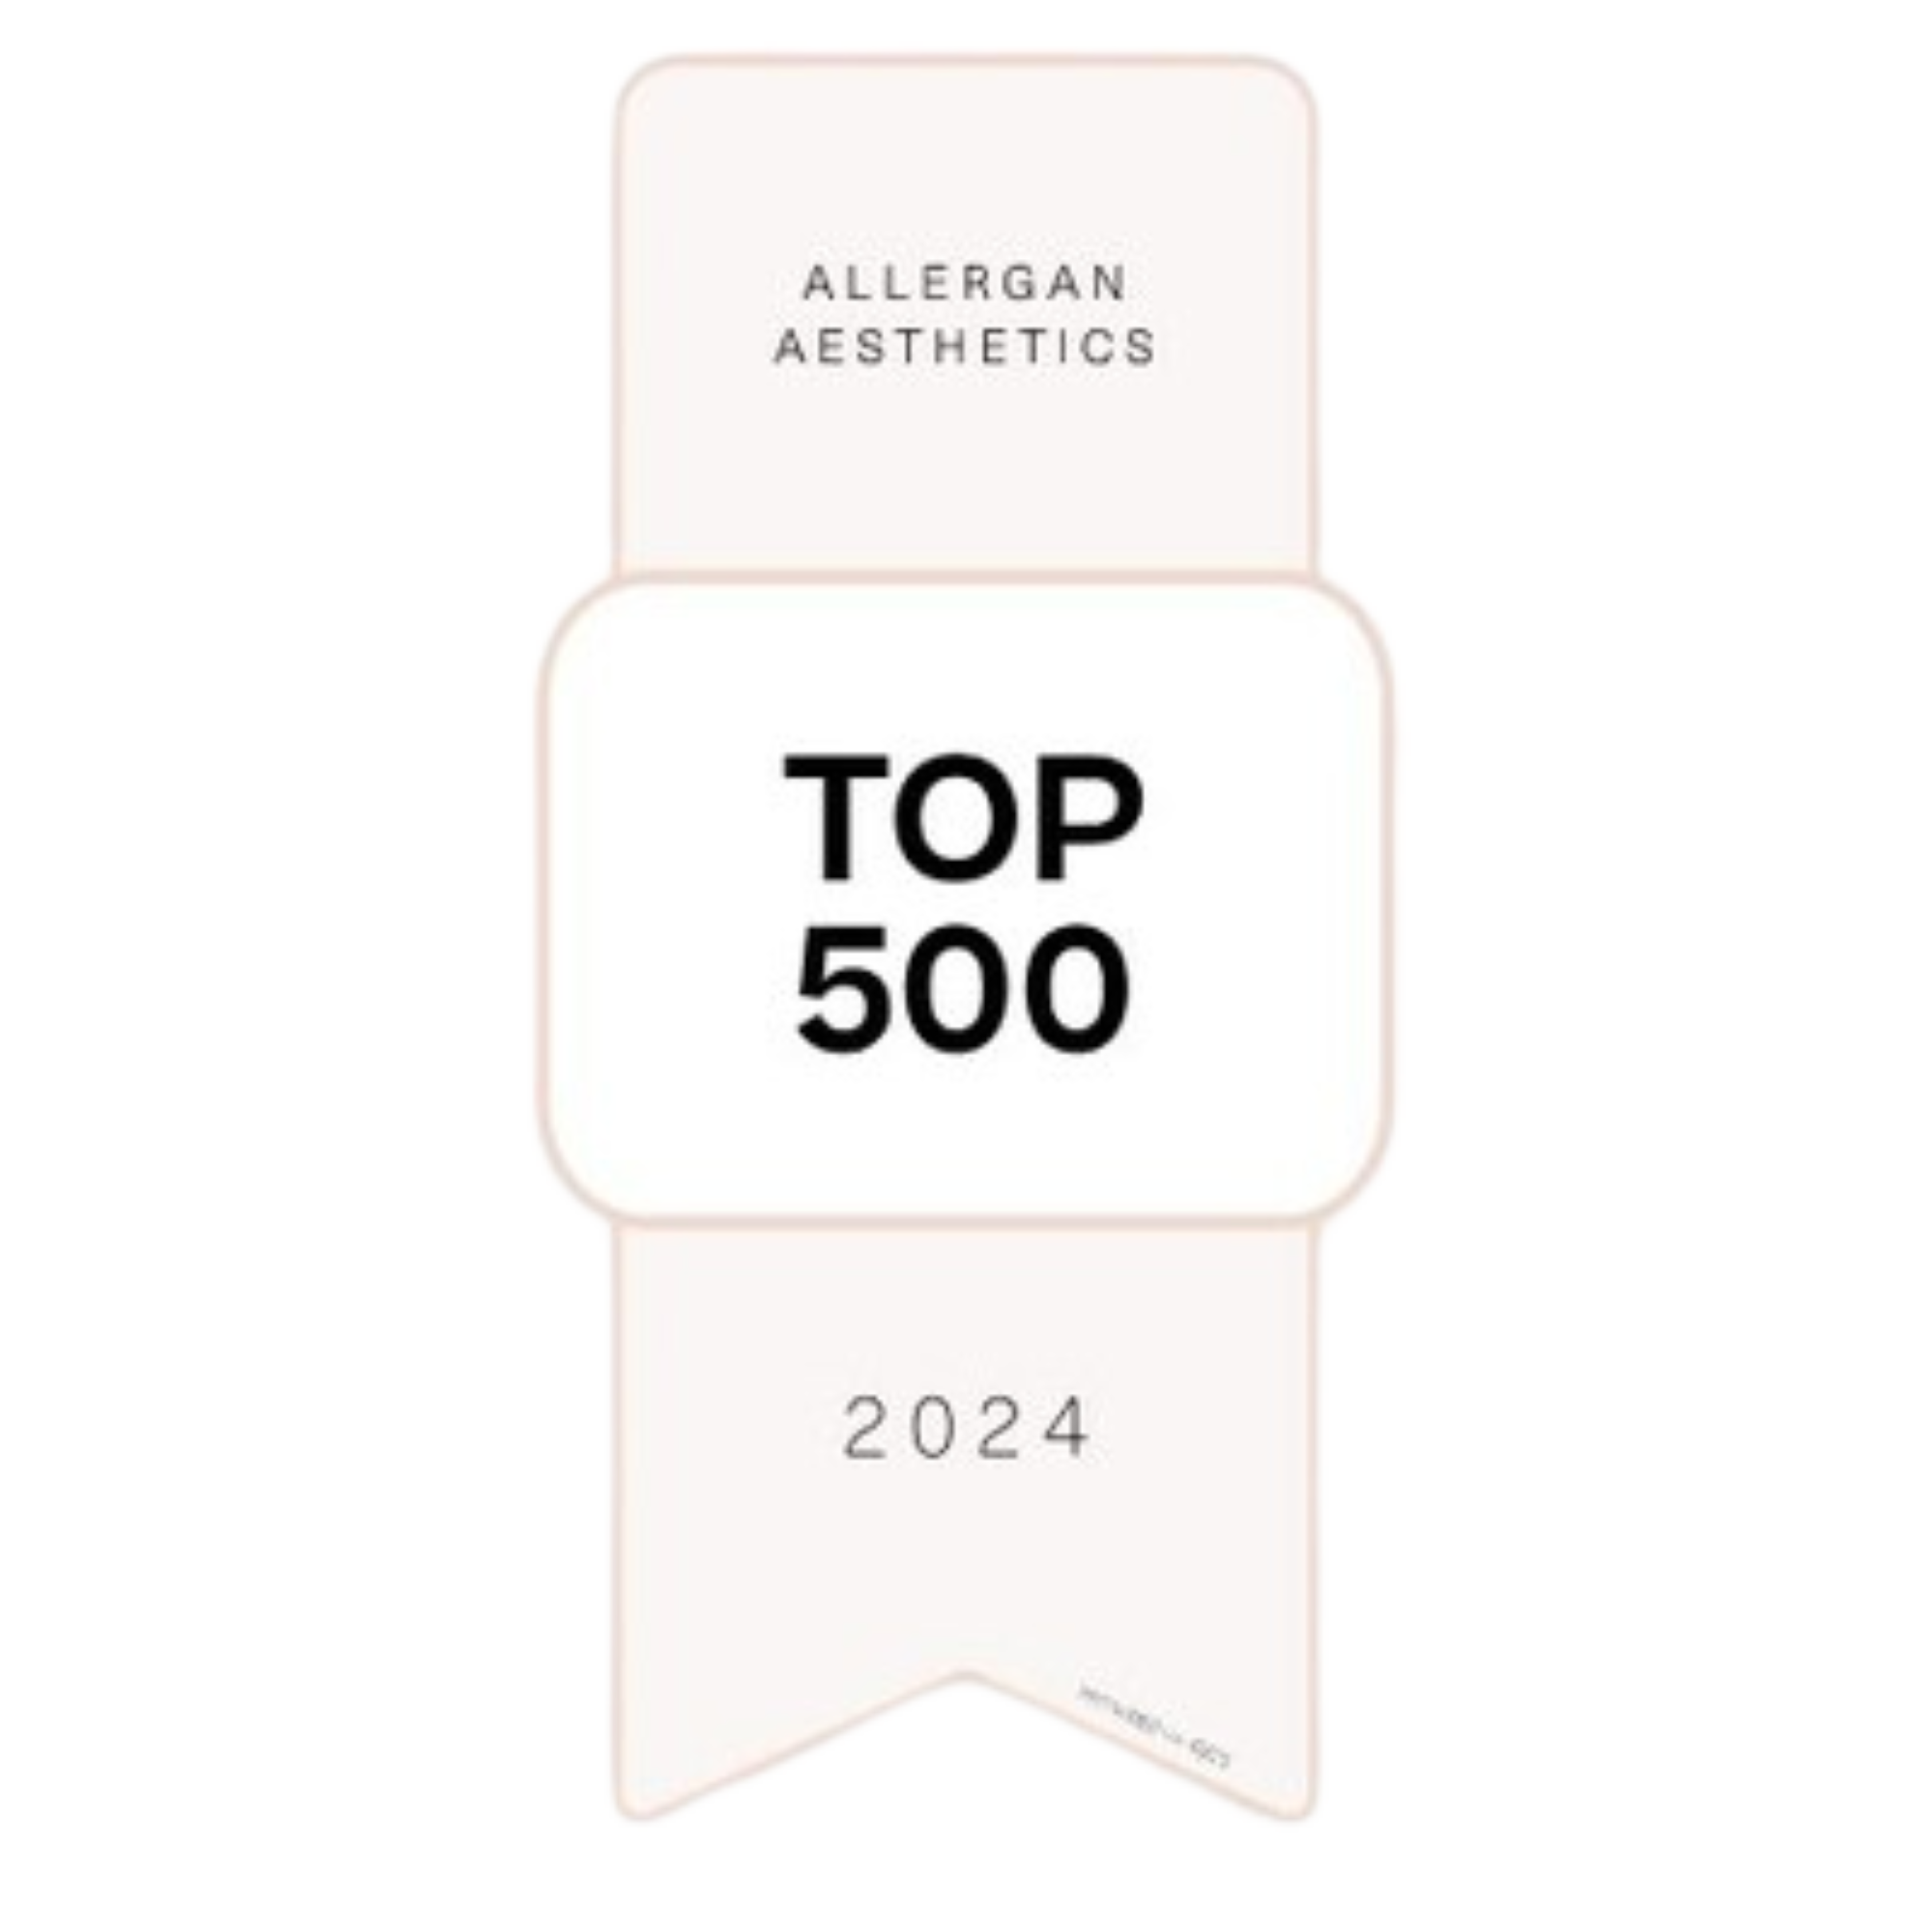 Top 500 Allergan Provider